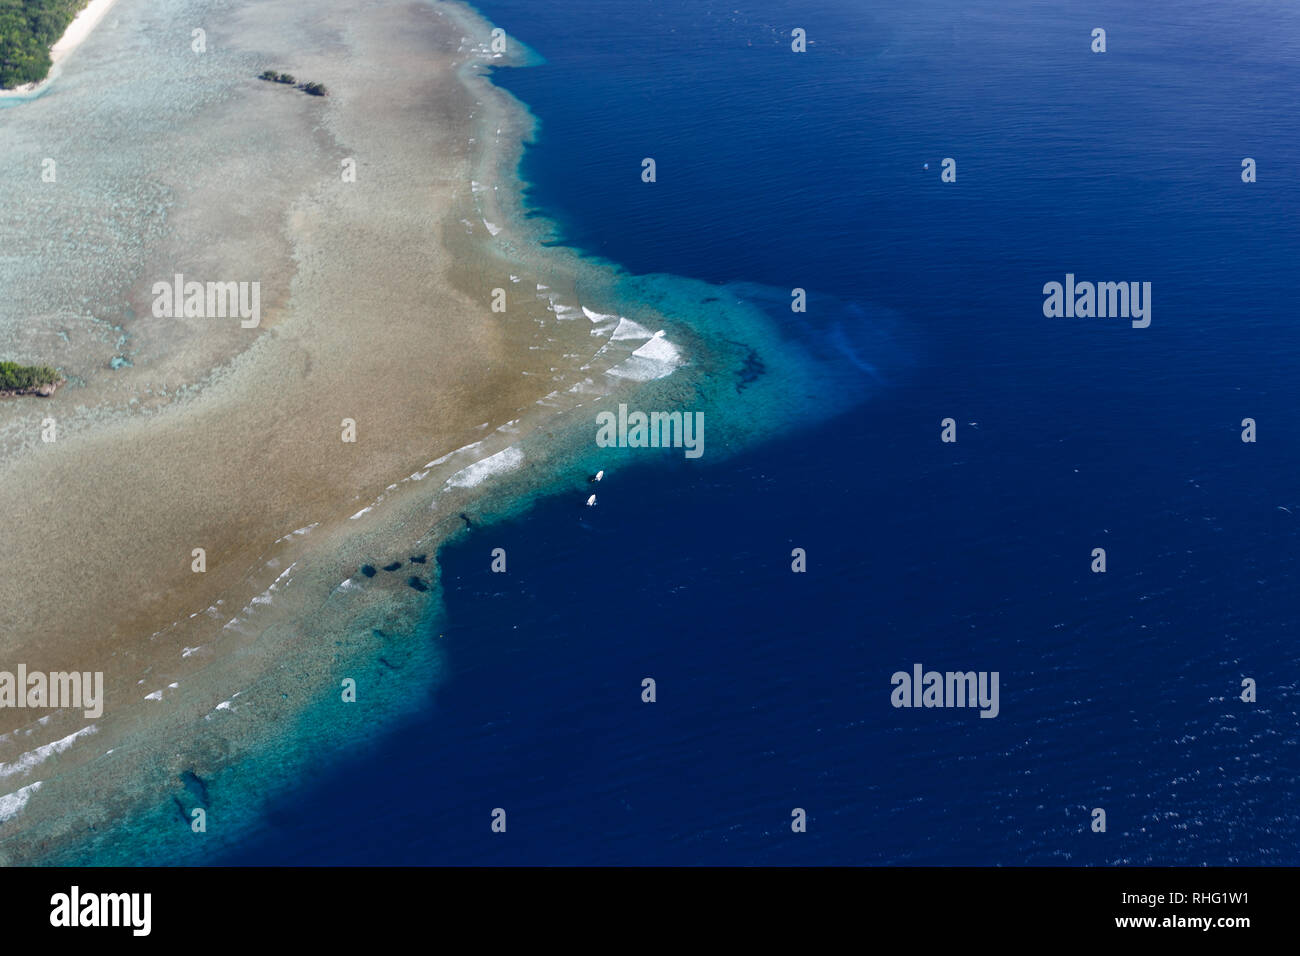 Vue aérienne de la côte et des hauts-fonds de corail dans le Pacifique sud Banque D'Images